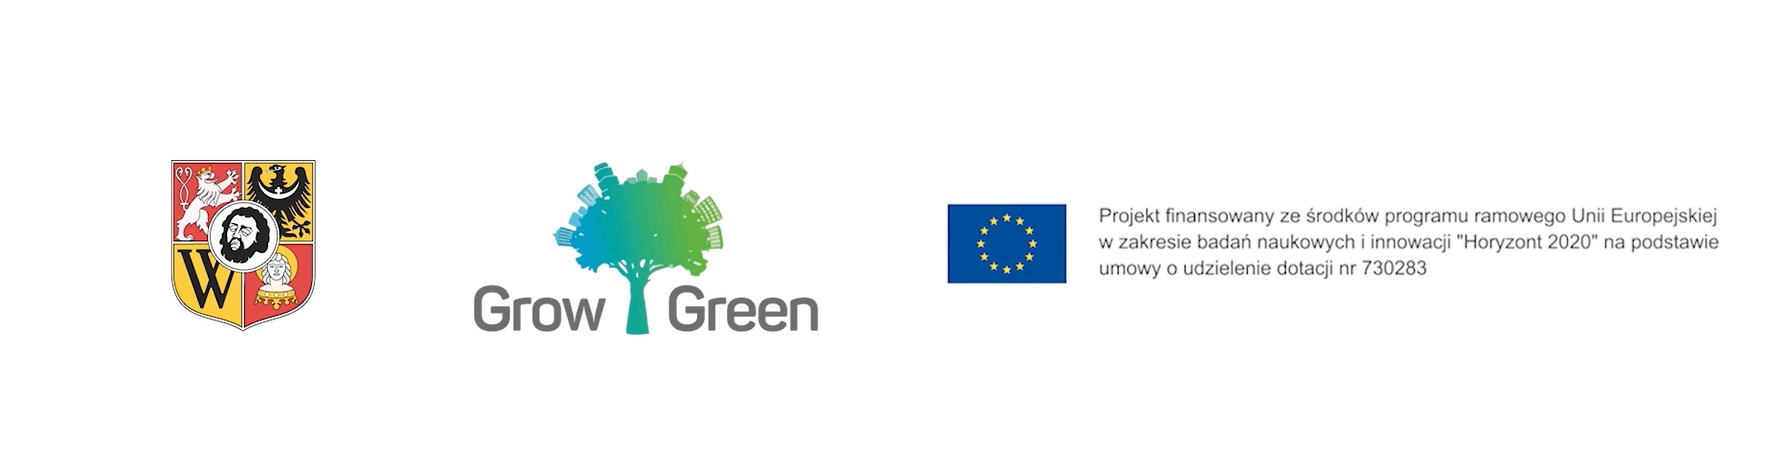 Logotyp unijny projektu GrowGreen